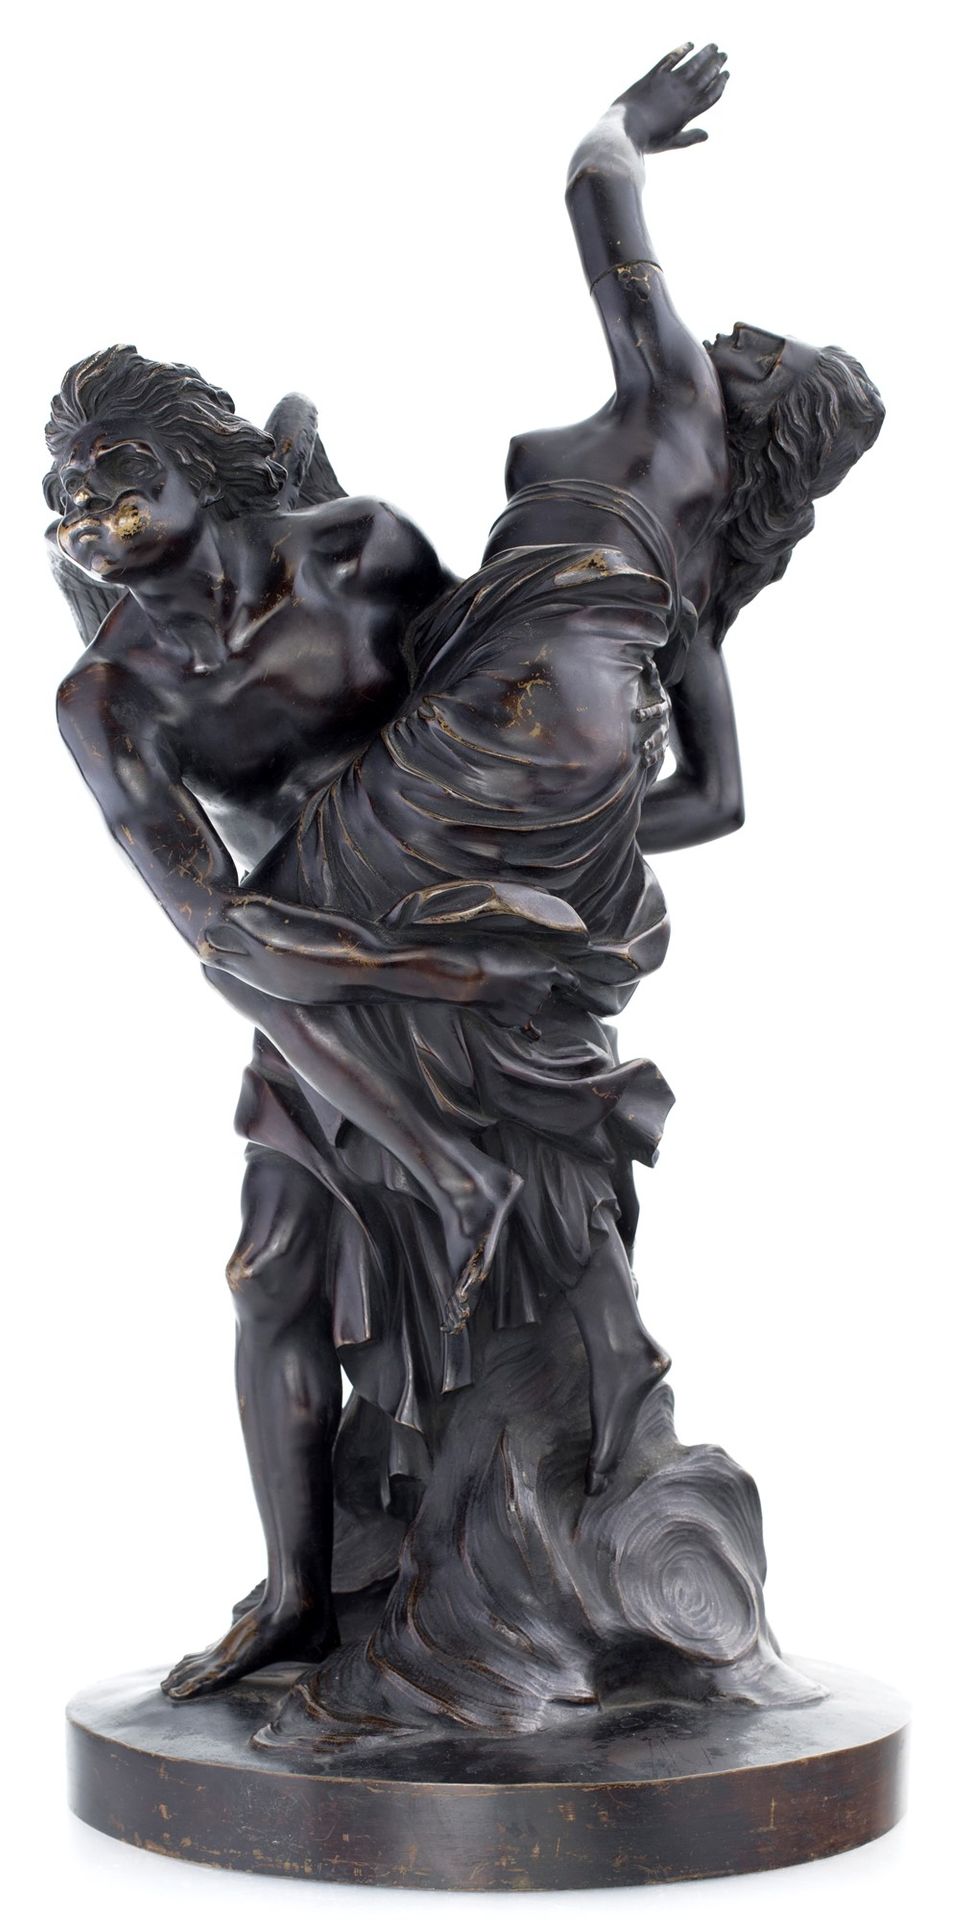 Burnished bronze group, 19th century que representa el rapto de Psique